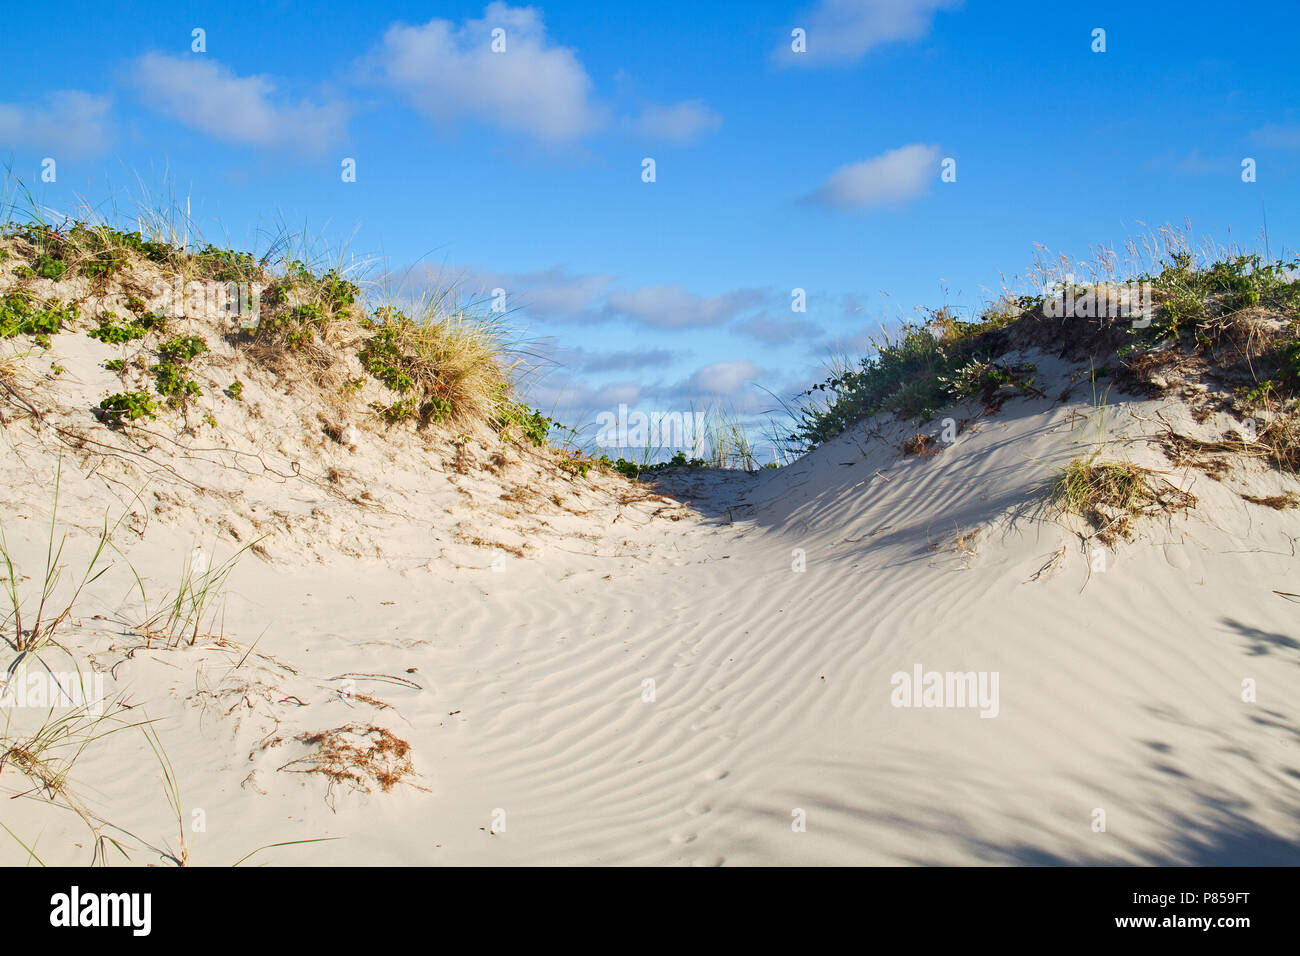 Dünen mit Gras und Marram Brombeere unter einem blauen Himmel, fußabdrücke eines Tieres, wahrscheinlich ein Fuchs, in den welligen Sand Stockfoto